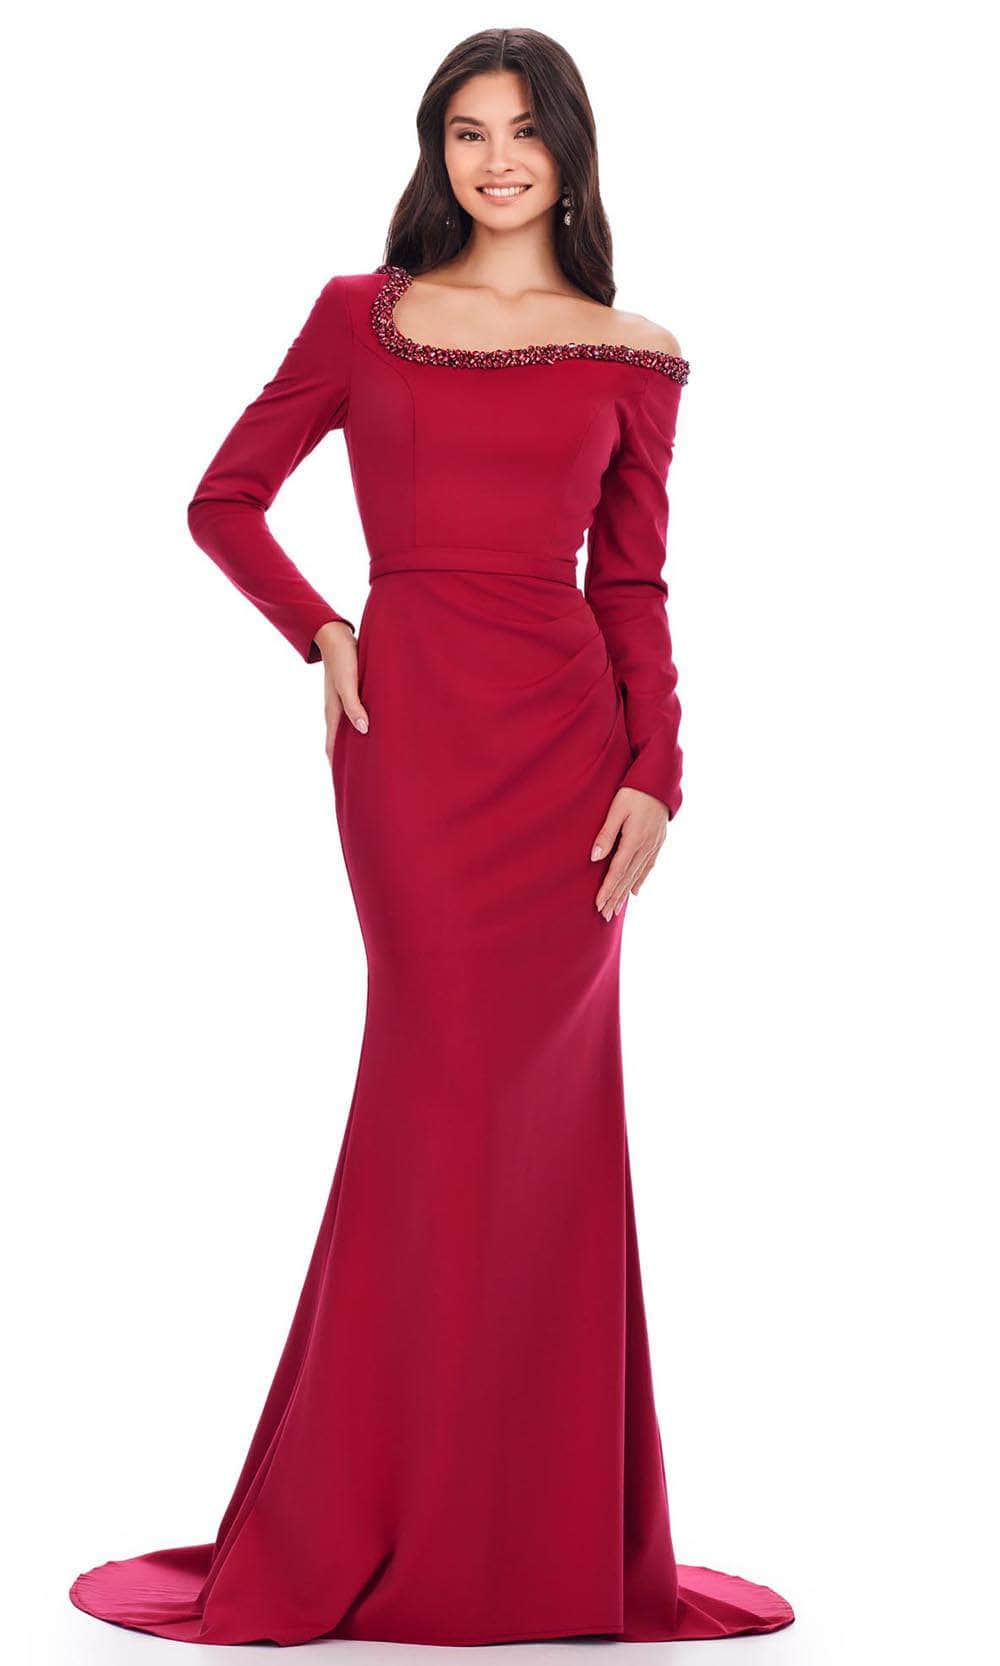 Ashley Lauren 11450 - Long Sleeve Scuba Evening Gown Ball Gowns 0 /  Burgundy